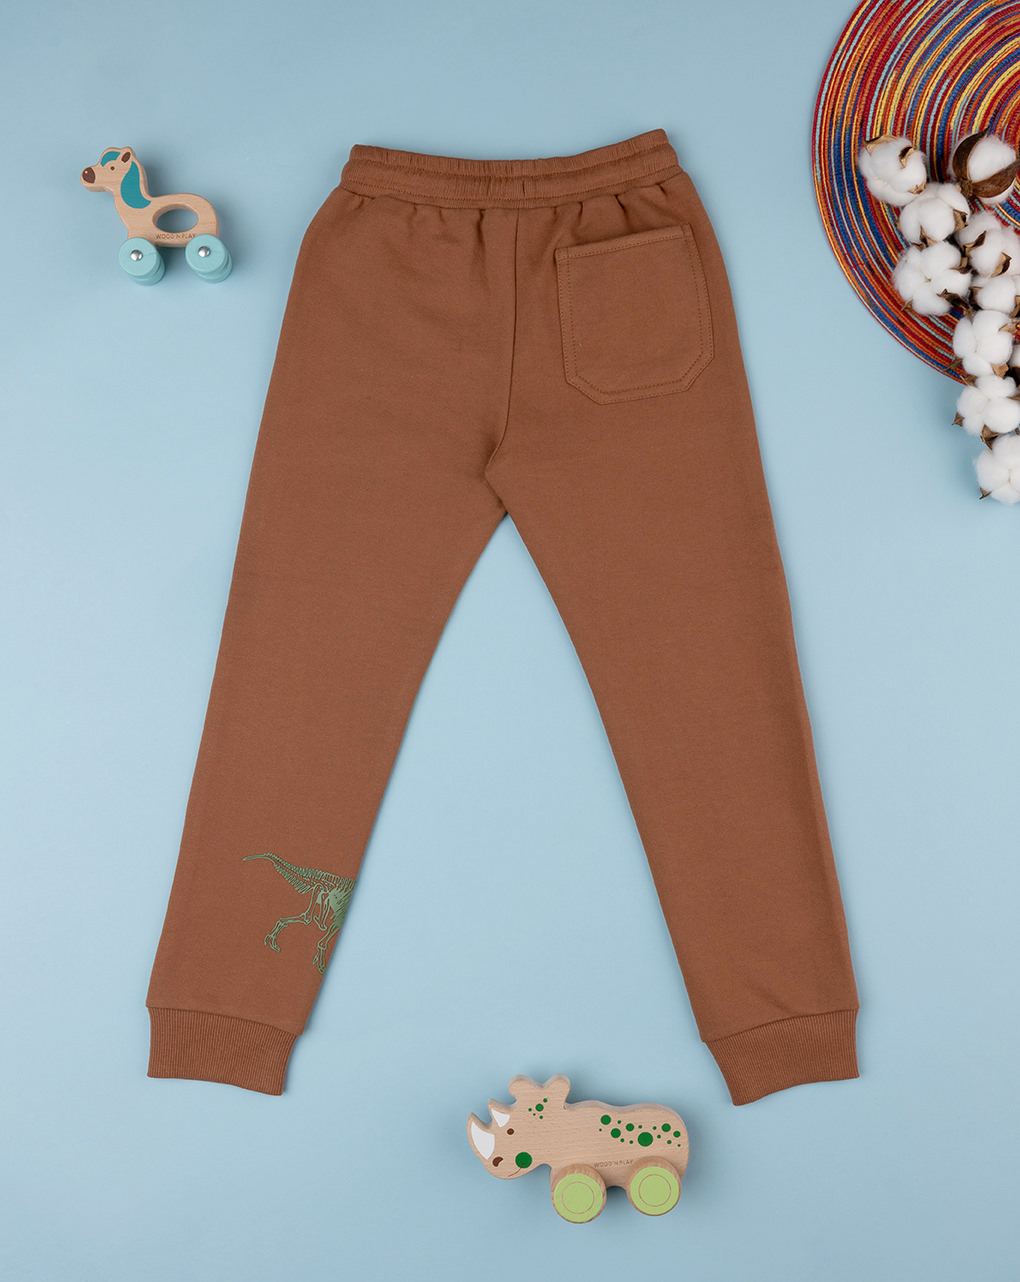 παιδικό παντελόνι φόρμας καφέ με δεινόσαυρο για αγόρι - Prénatal